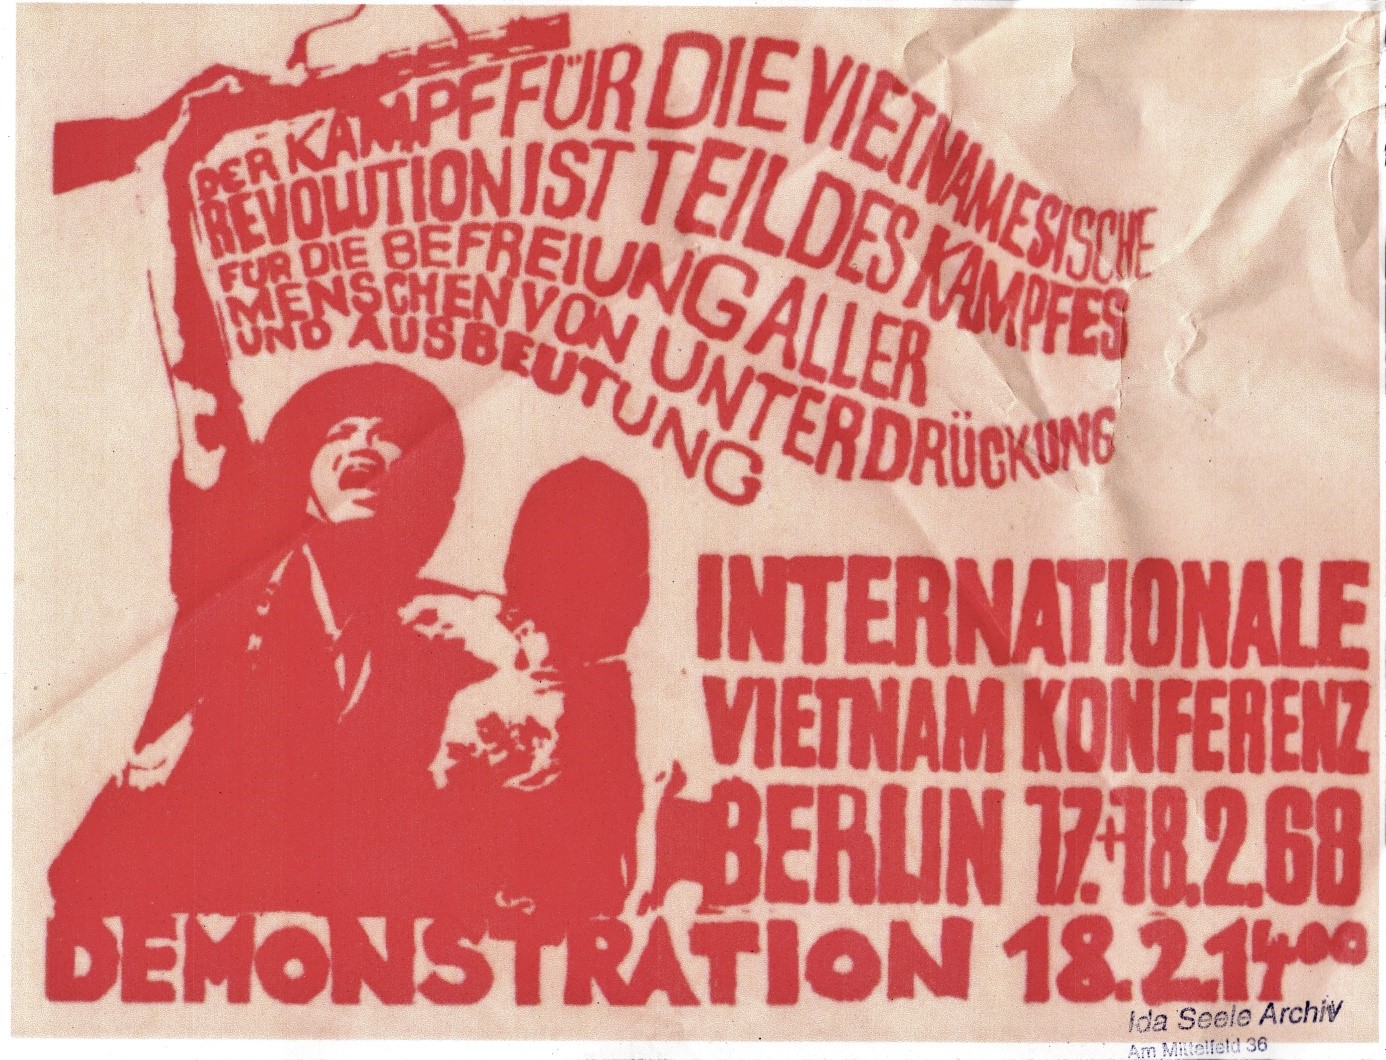 Abb. 1 Plakat für die Internationale Vietnam Konferenz